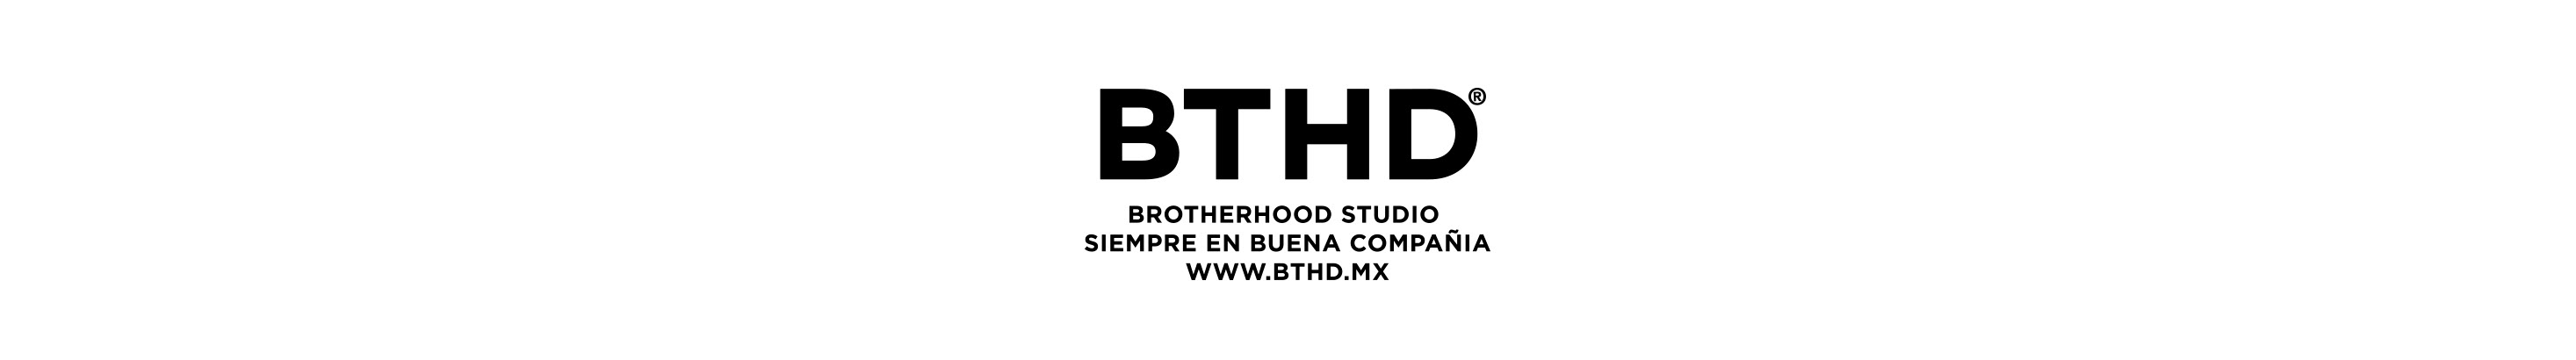 Brotherhood Studio ®'s profile banner